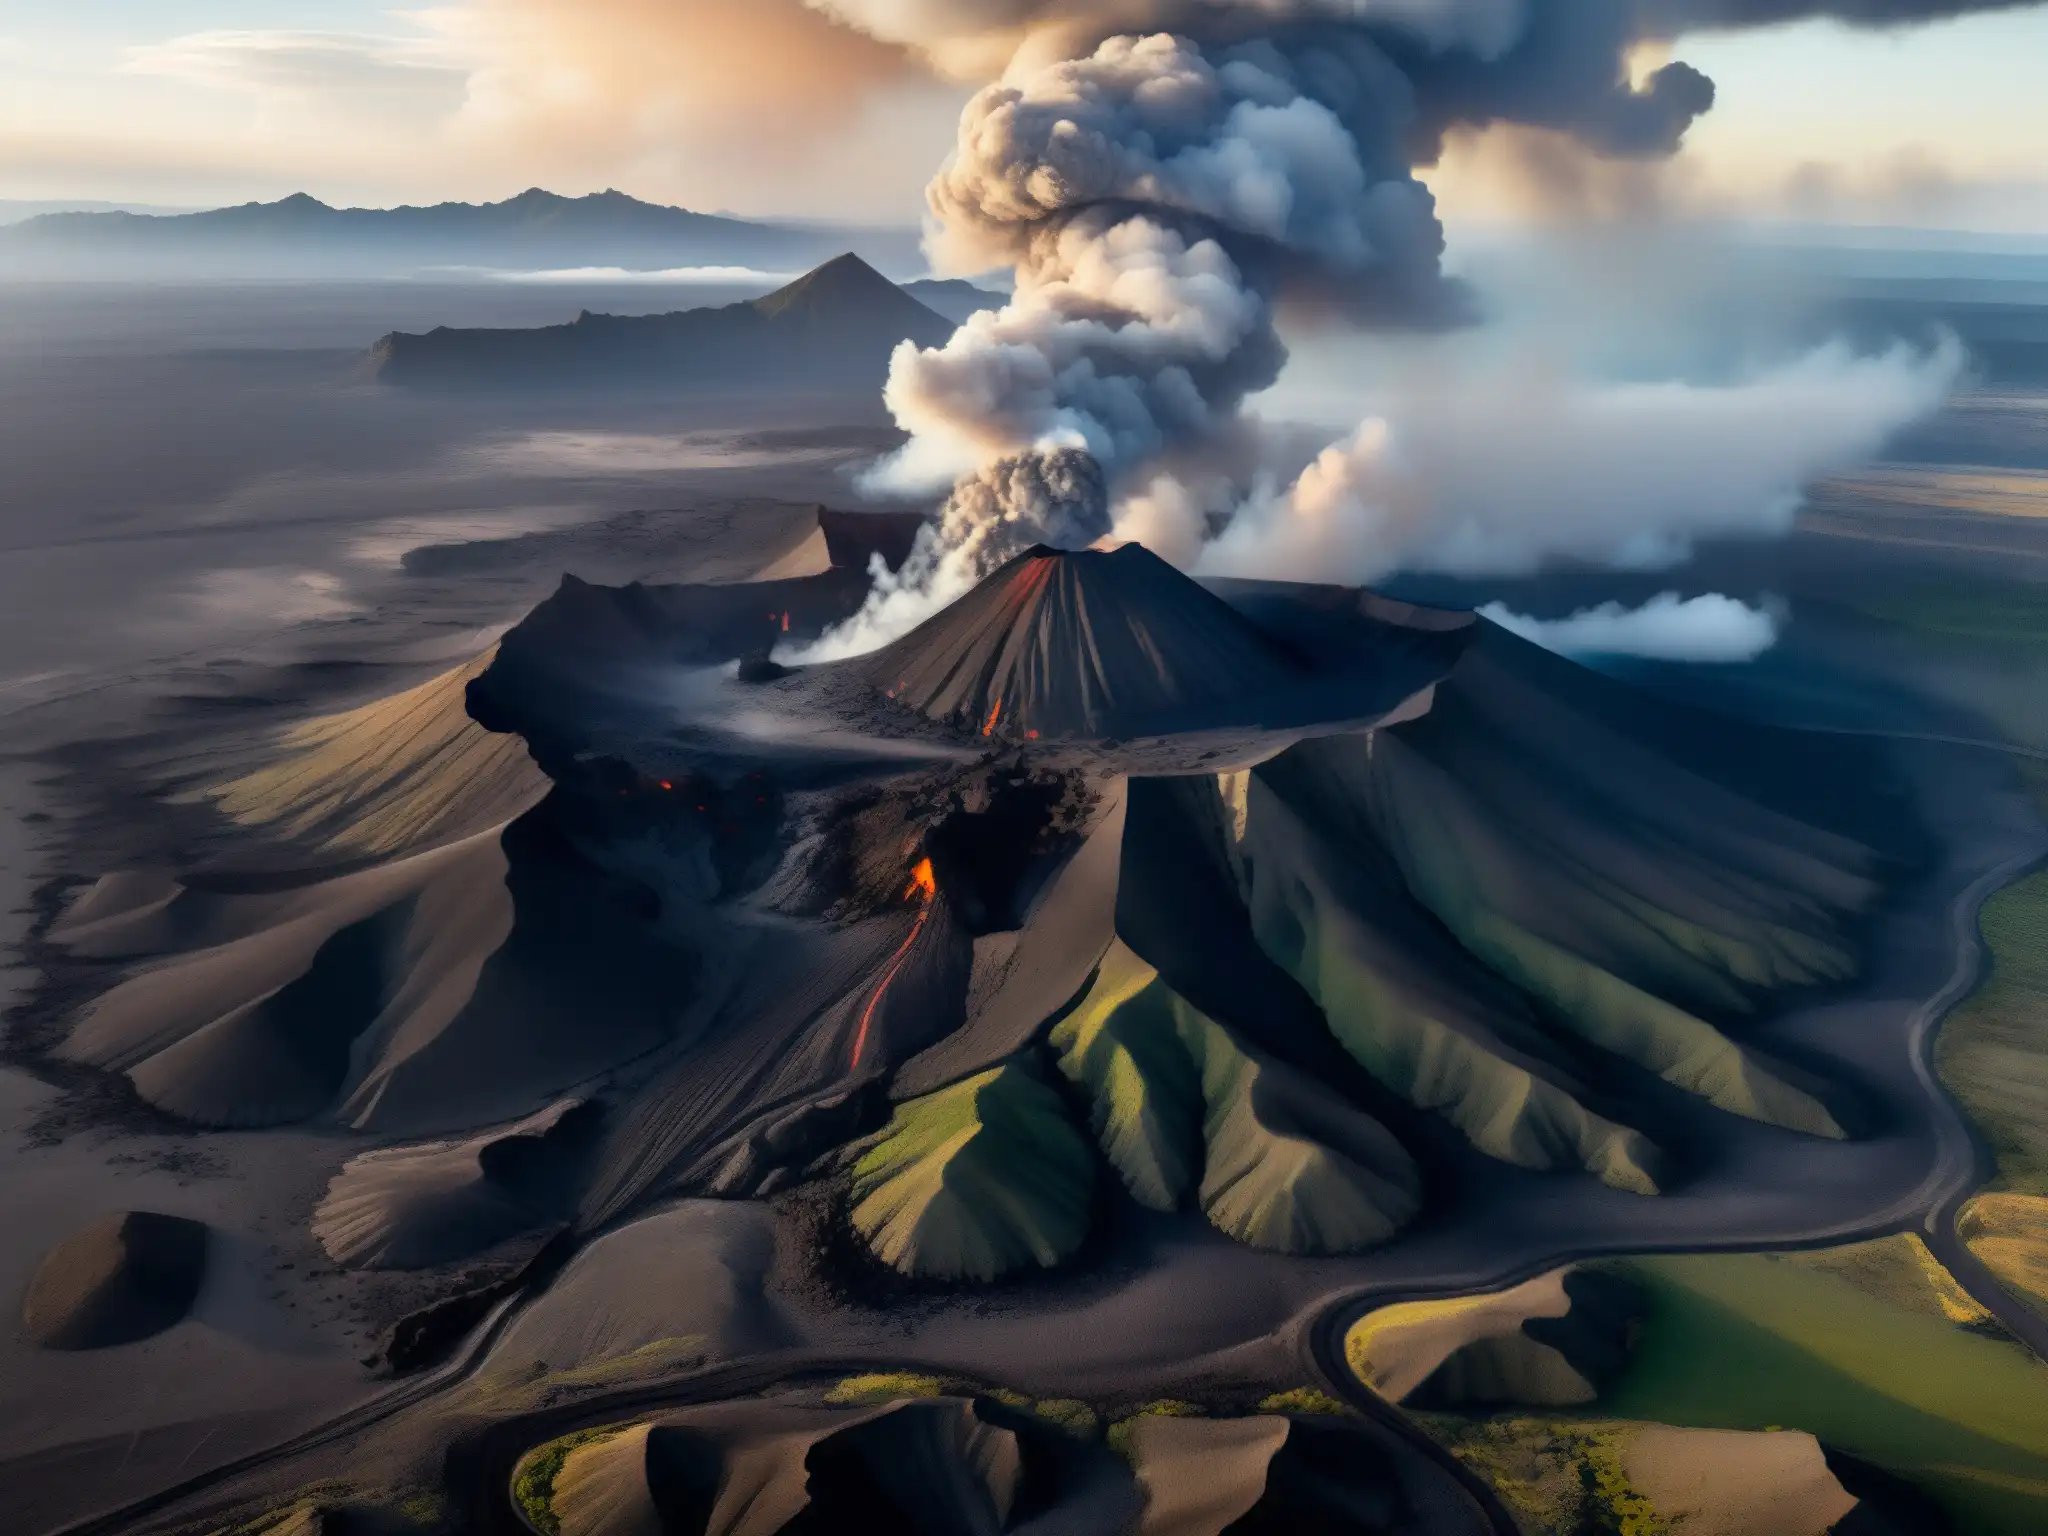 Vista aérea de un volcán humeante con nubes de ceniza, rocas y un pueblo, evocando la narrativa de mitos y leyendas urbanas de volcanes